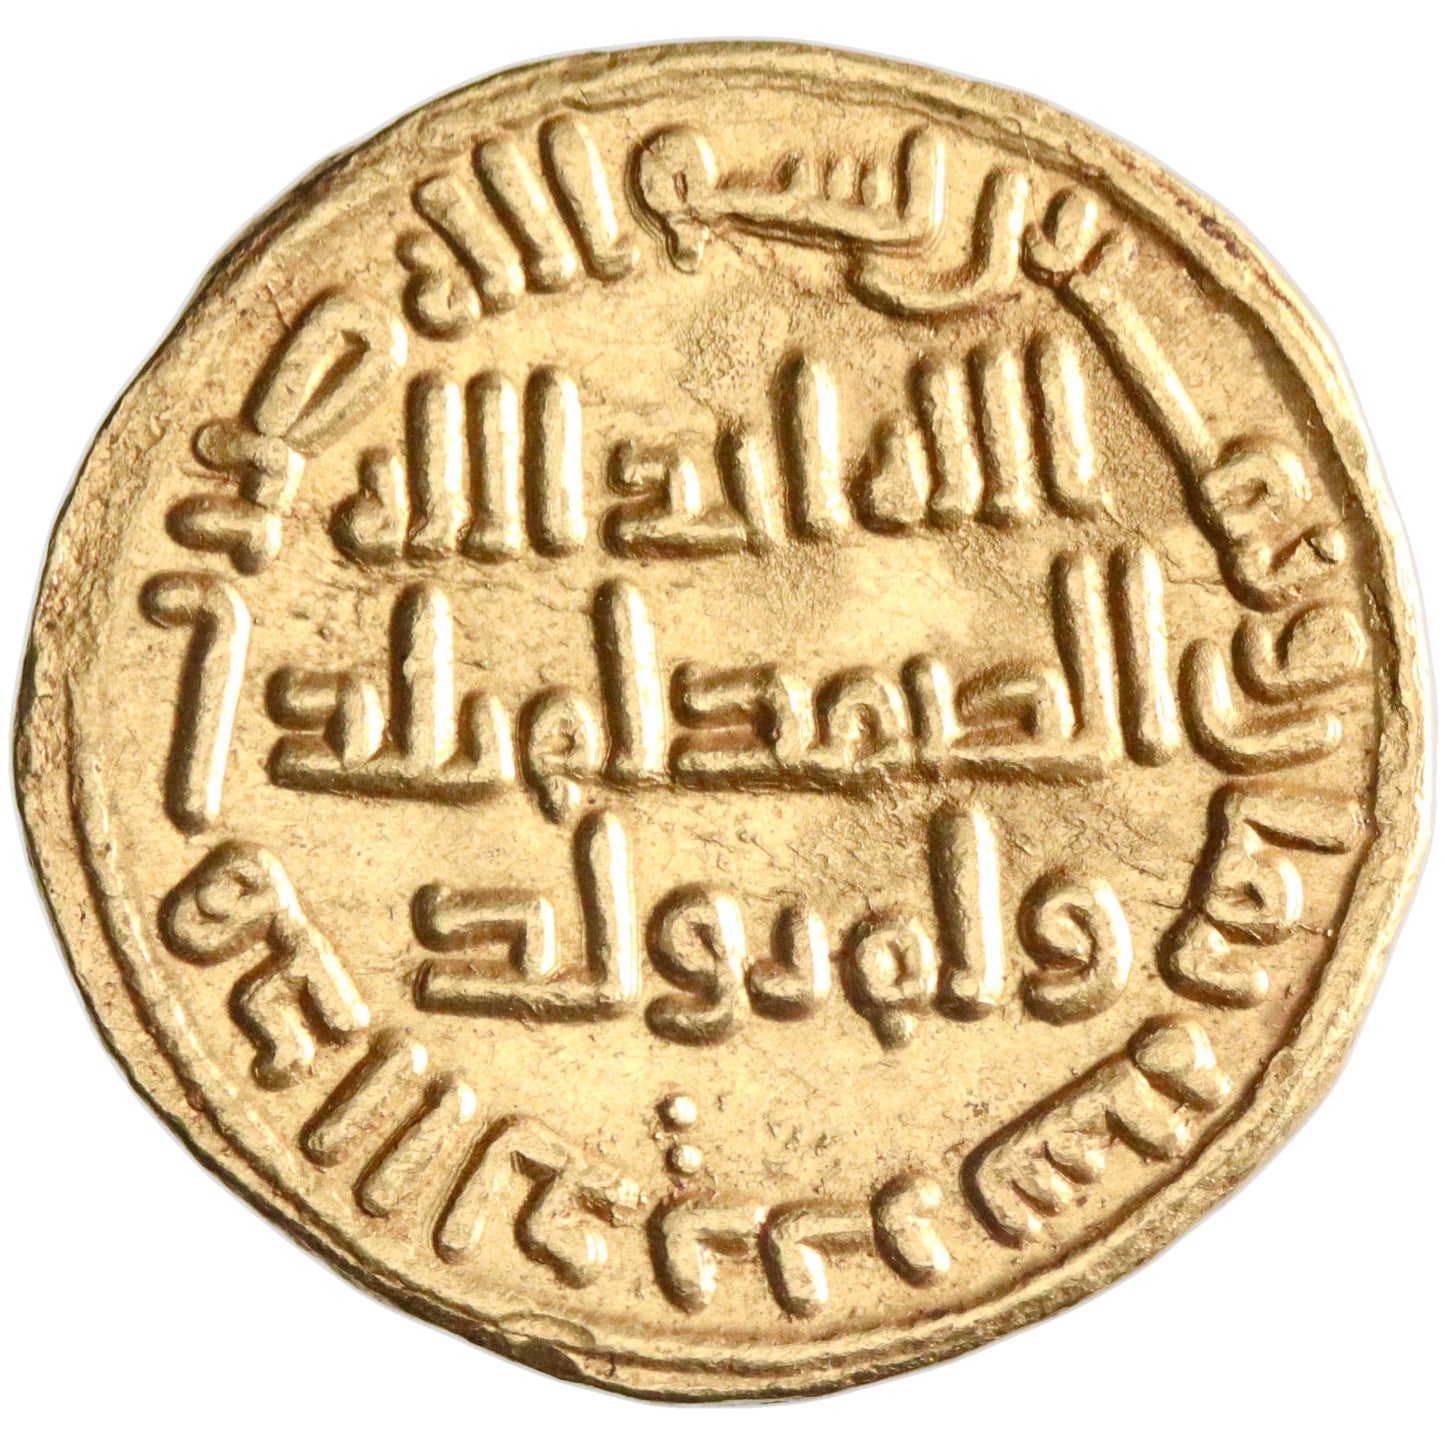 Umayyad, al-Walid I ibn 'Abd al-Malik, gold dinar, AH 88